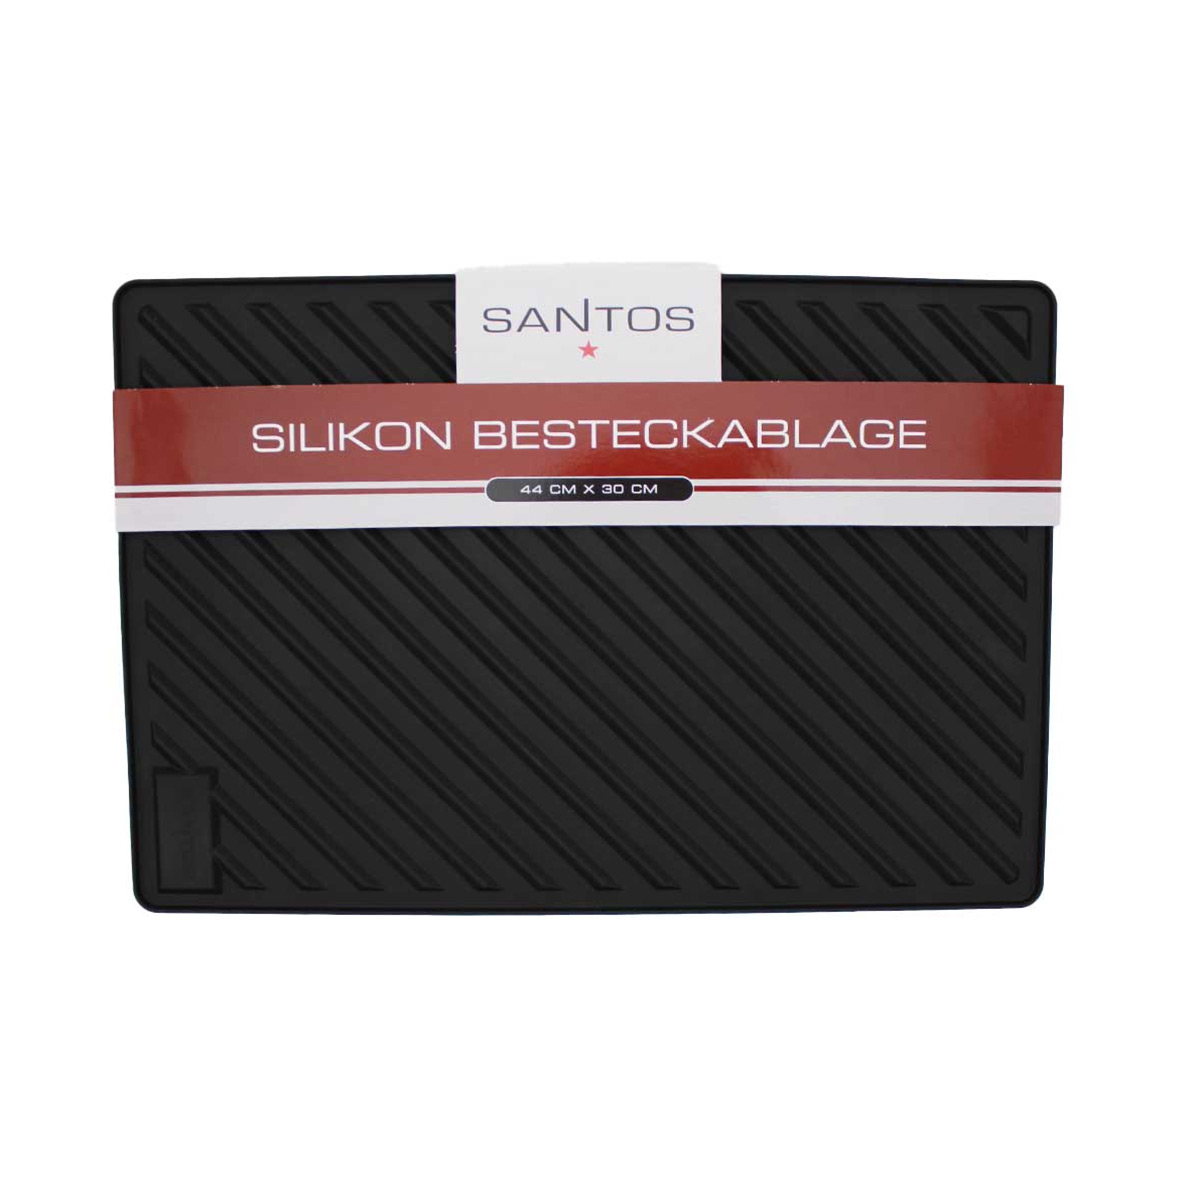 SANTOS Silikon Besteckablage für Grillzubehör, 44 x 30 cm